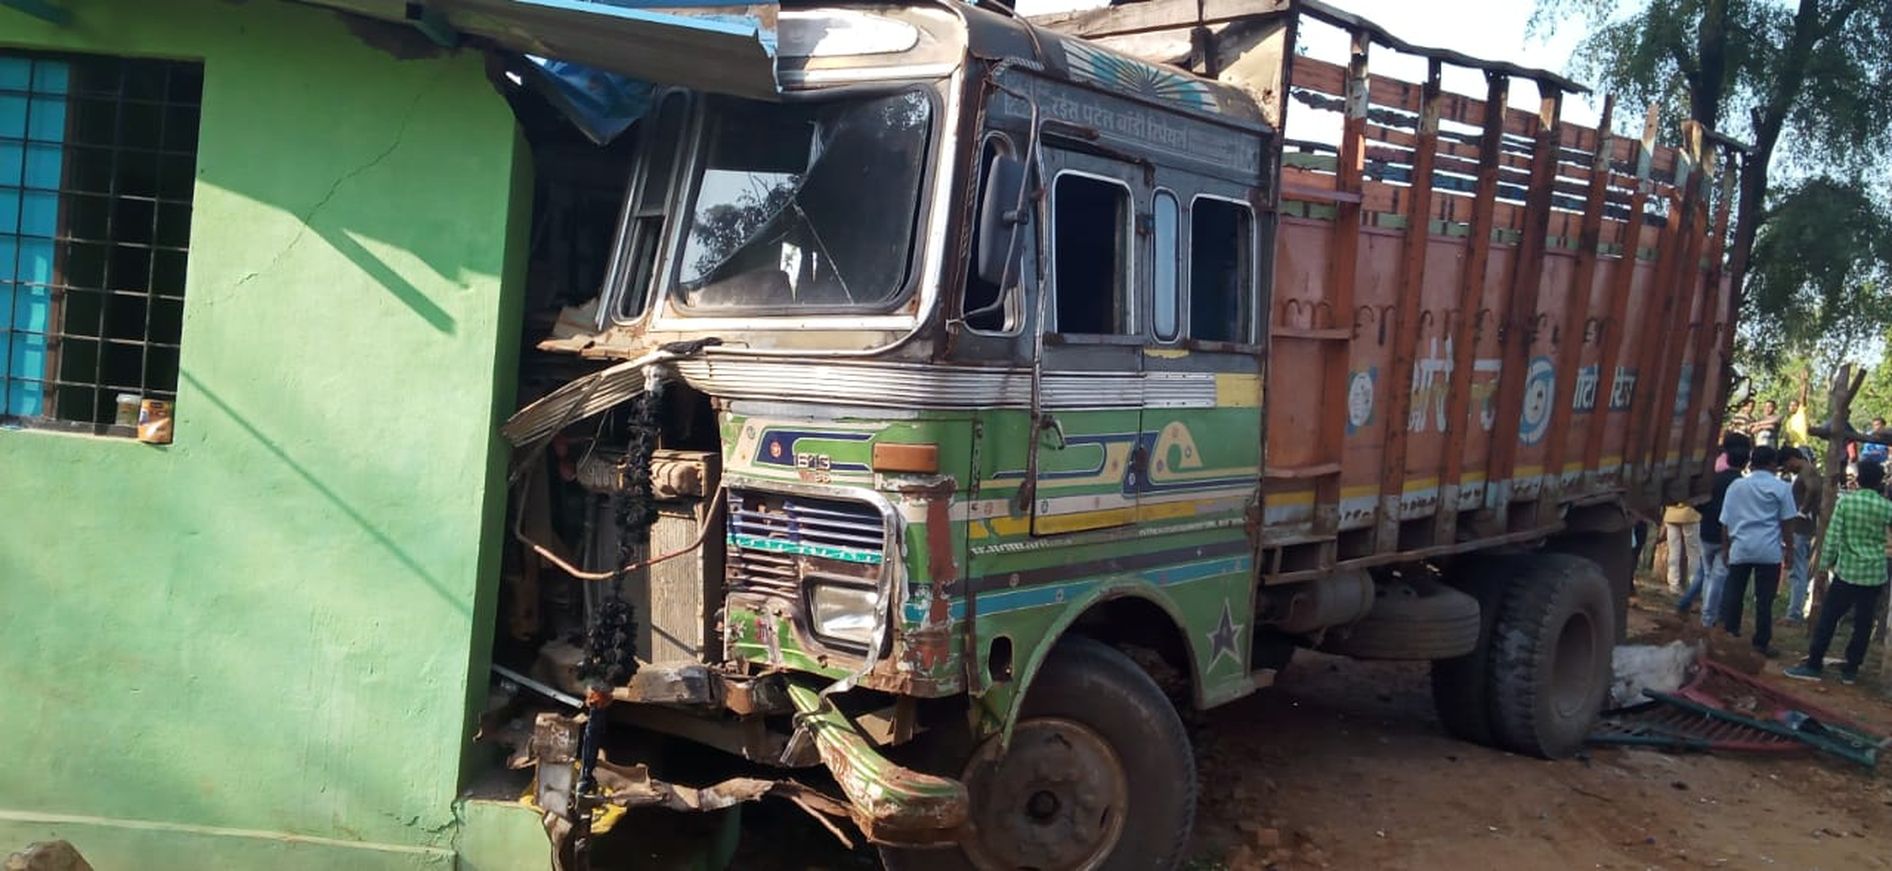 ट्रक ने बस को मारी टक्कर, 14 यात्री घायल